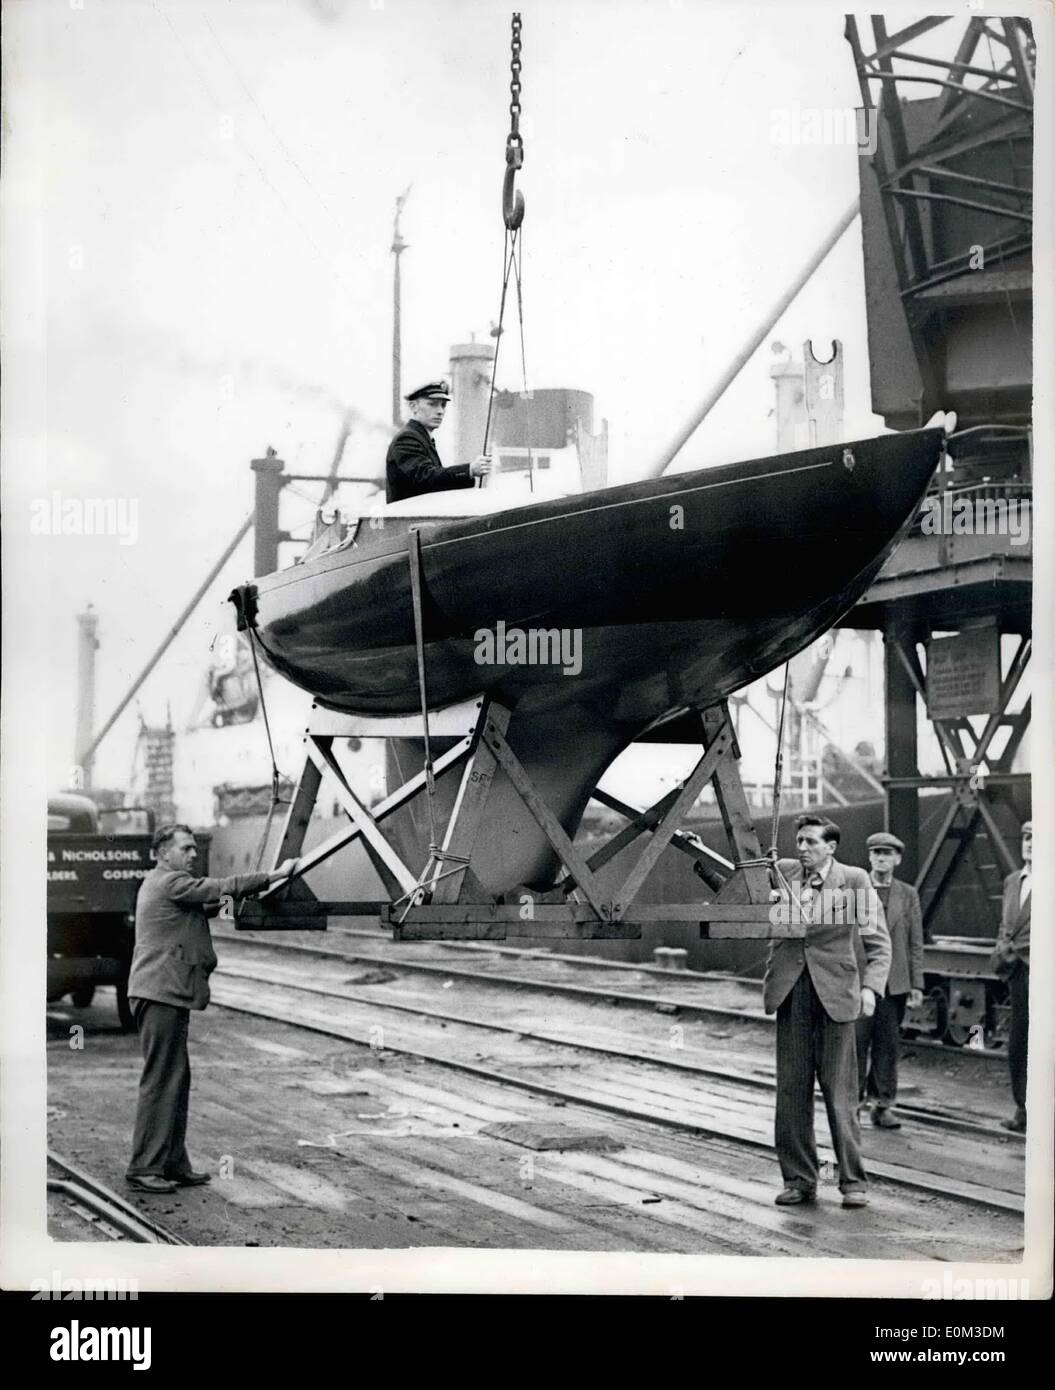 Giugno 06, 1953 - Duca di Edimburgo di Racing Yacht arriva dalla strada per la regata: foto mostra il Duca di Edimburgo di racing yacht " Bluebottle'' - viene scaricato da un camion all'arrivo a Granton - dopo un viaggio di 500 miglia di strada da Gosport - di prendere parte nella quarta regata. Foto Stock